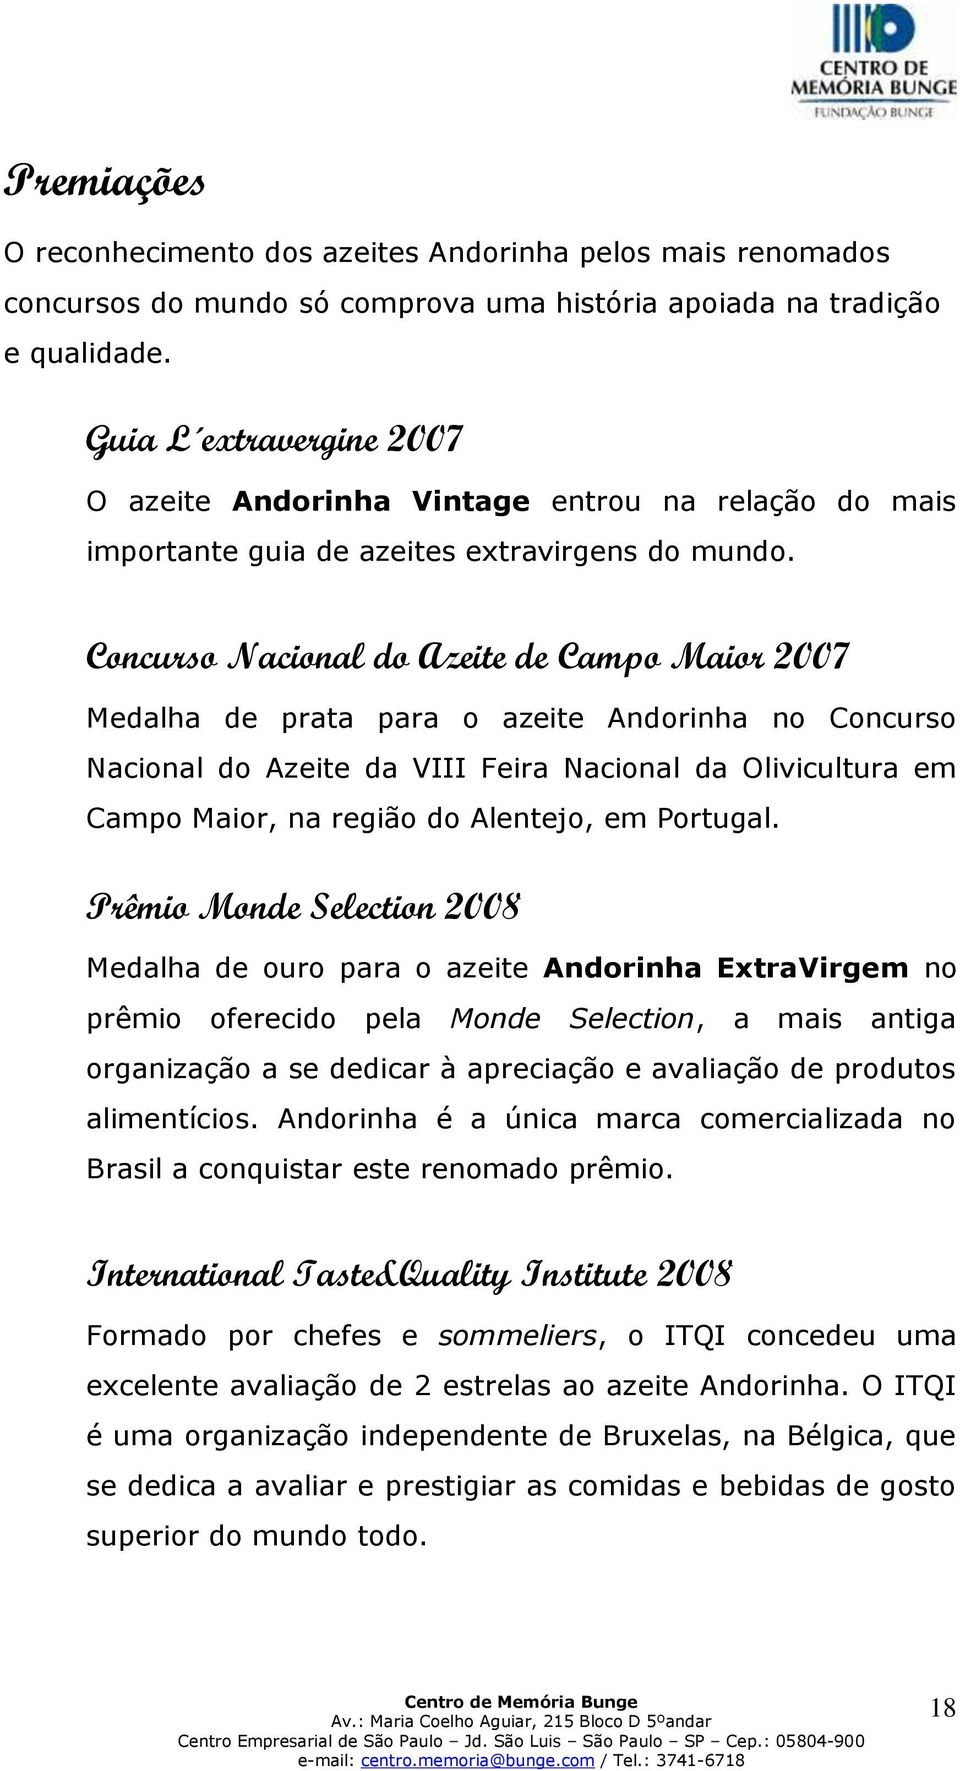 Concurso Nacional do Azeite de Campo Maior 2007 Medalha de prata para o azeite Andorinha no Concurso Nacional do Azeite da VIII Feira Nacional da Olivicultura em Campo Maior, na região do Alentejo,